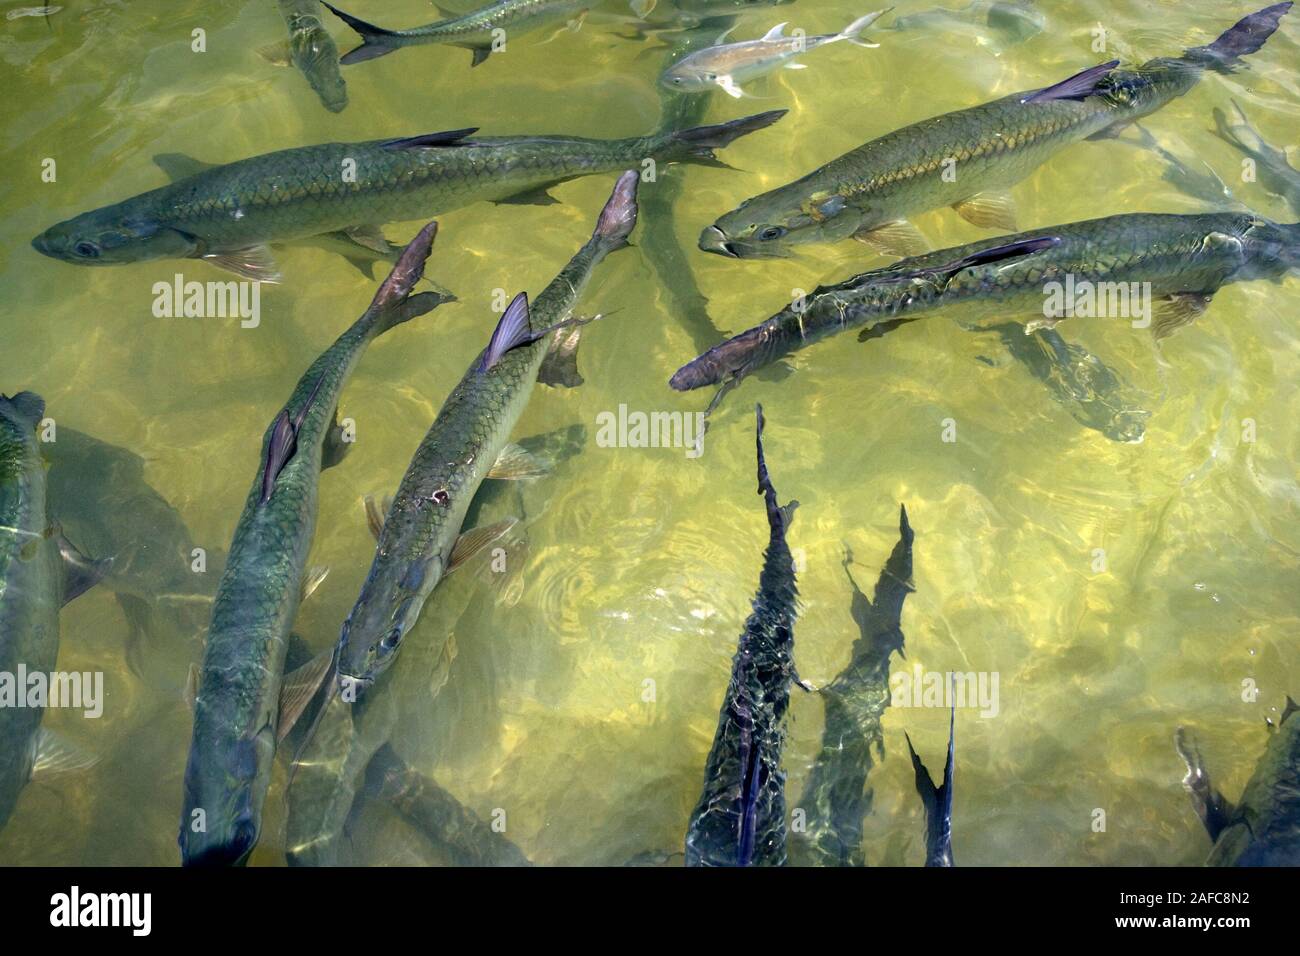 Sábalo pescado en Florida, EE.UU. Foto de stock